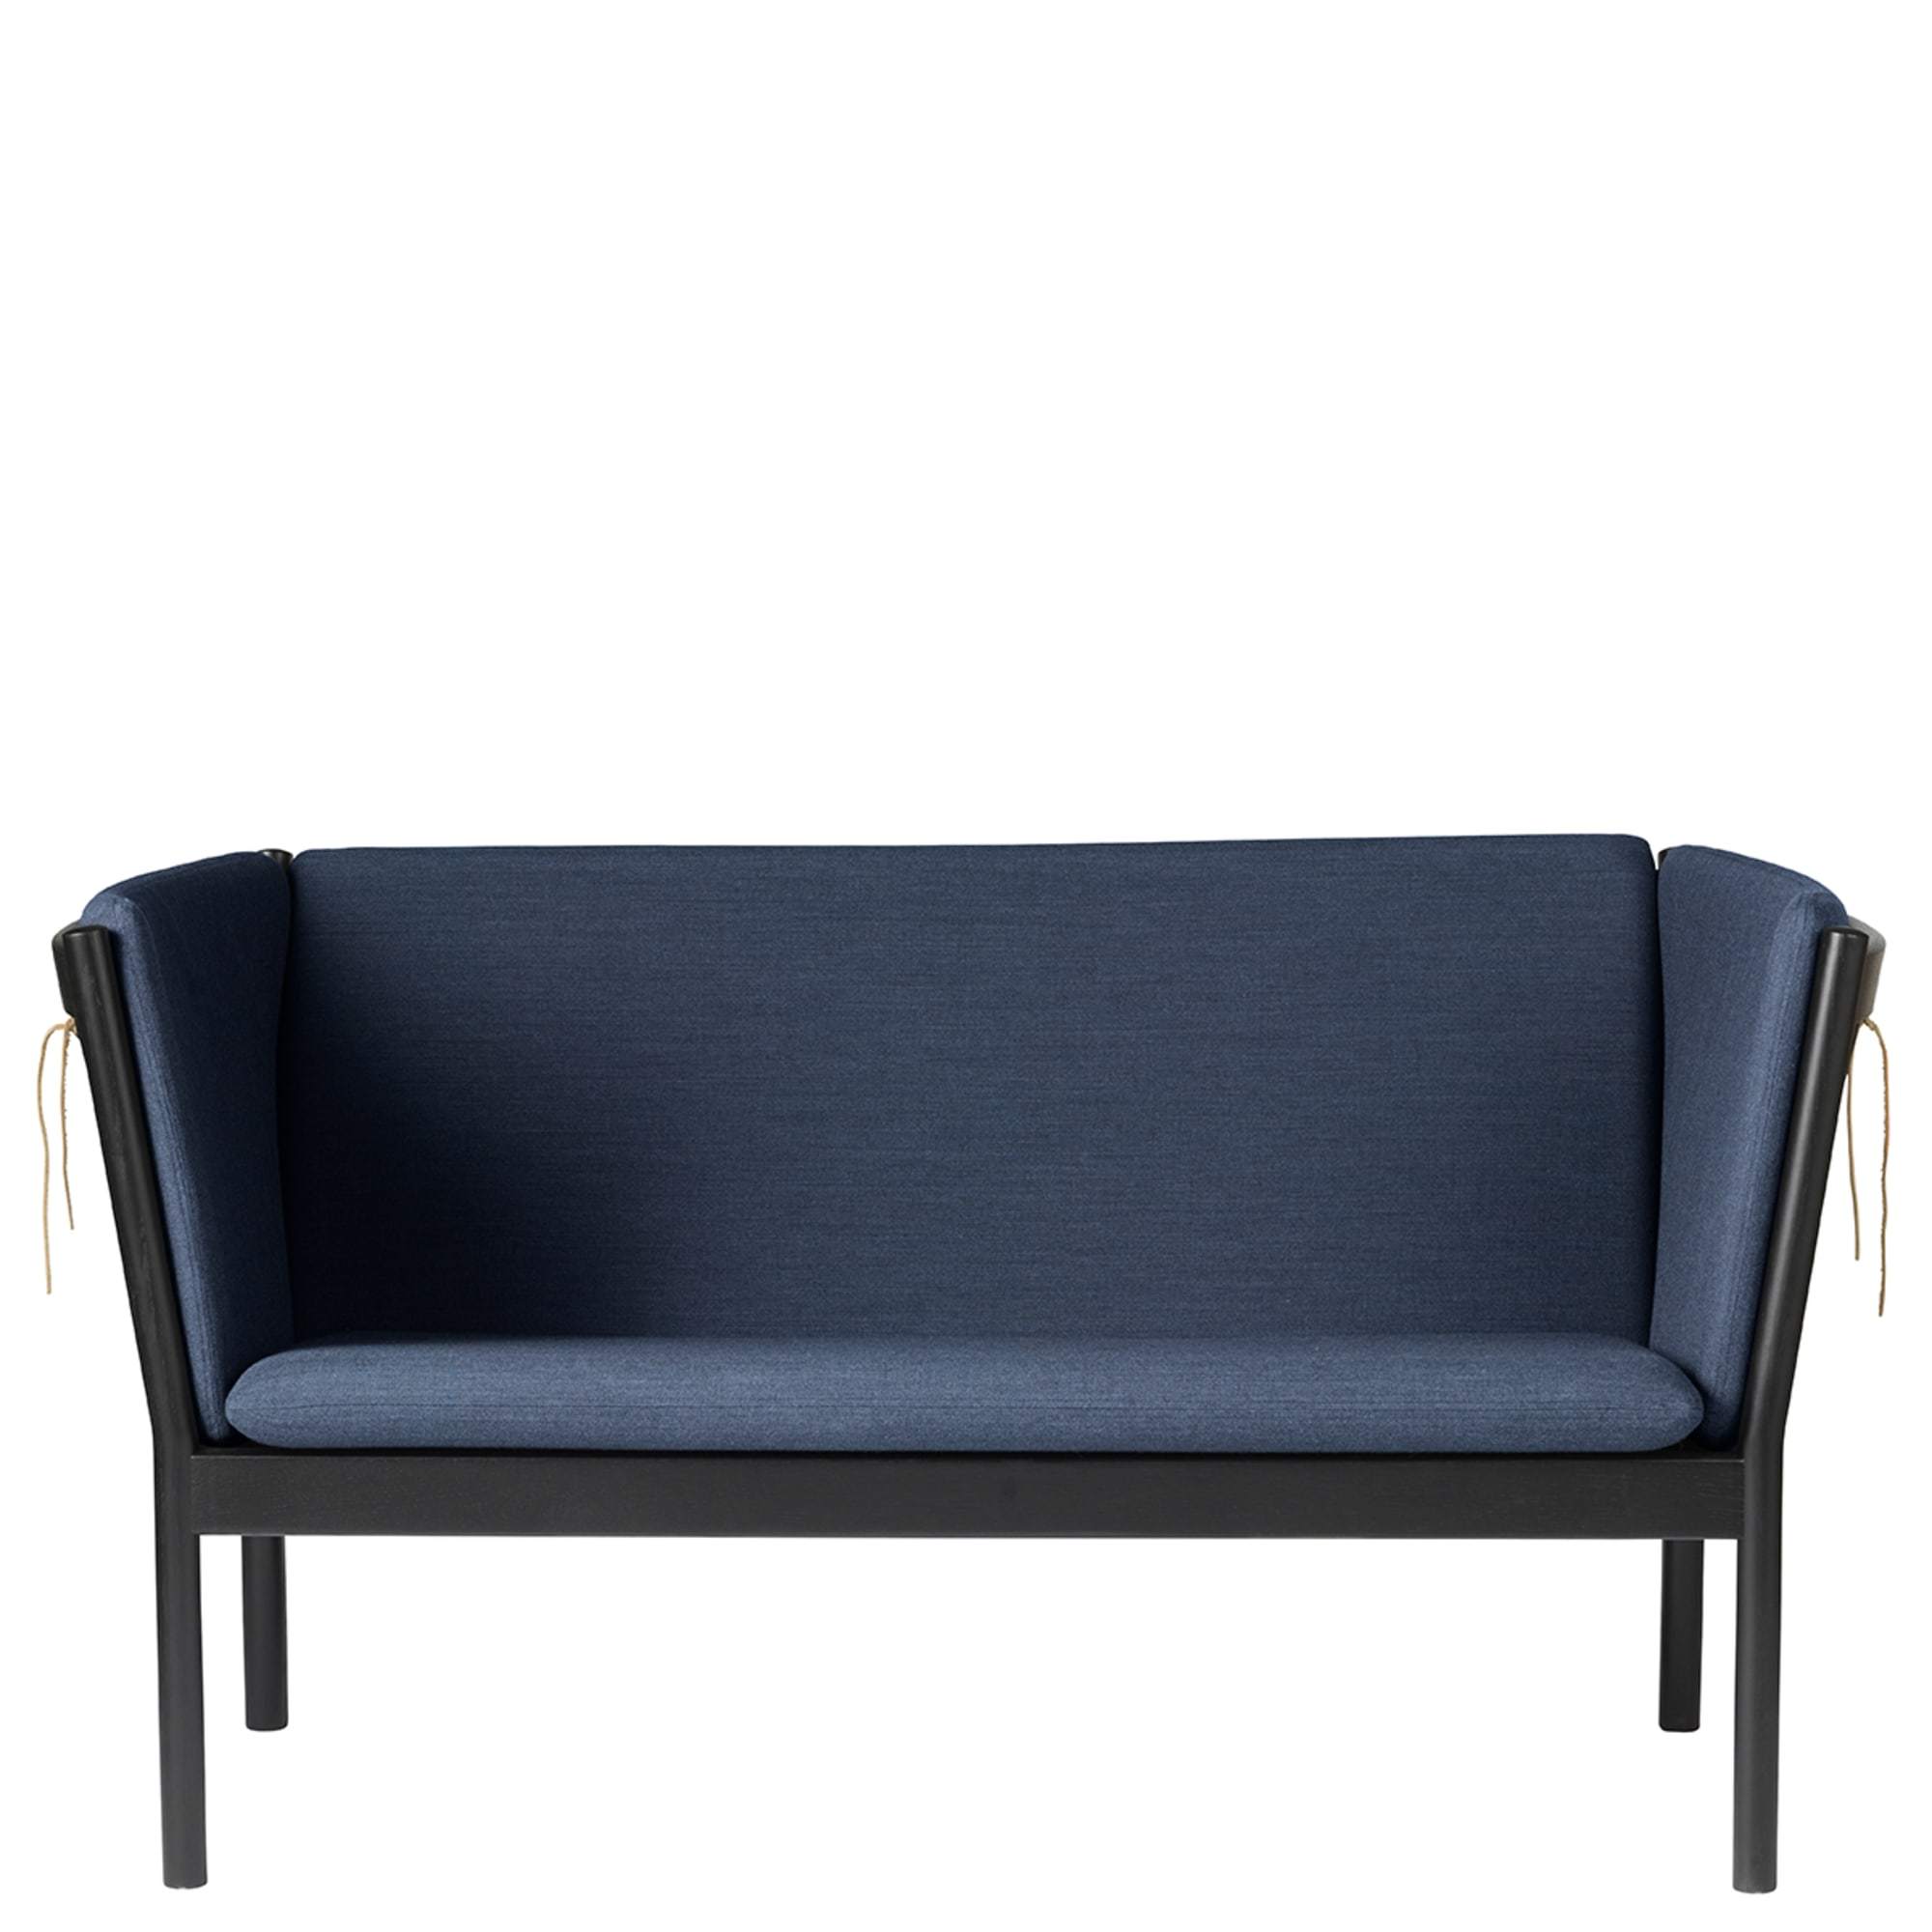 Fdb Møbler J148 2 henkilö sohva, musta tammi, tummansininen kangas